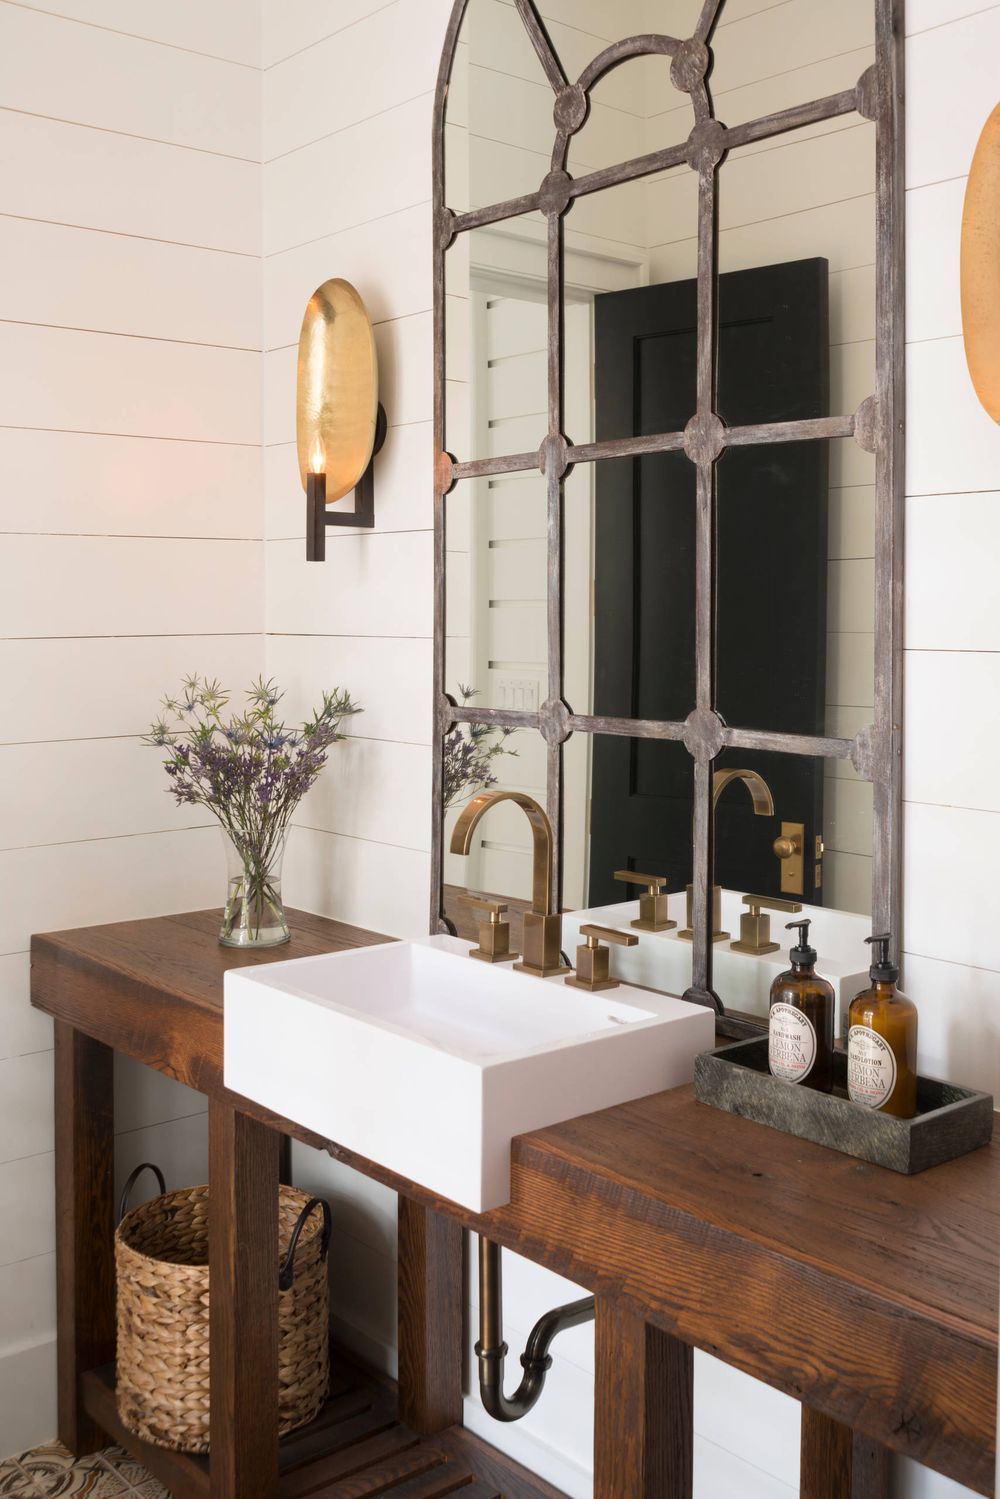 Metal Industrial Mirror above Bathroom Drop-in Sink and Wood Counter via Arlene Williams